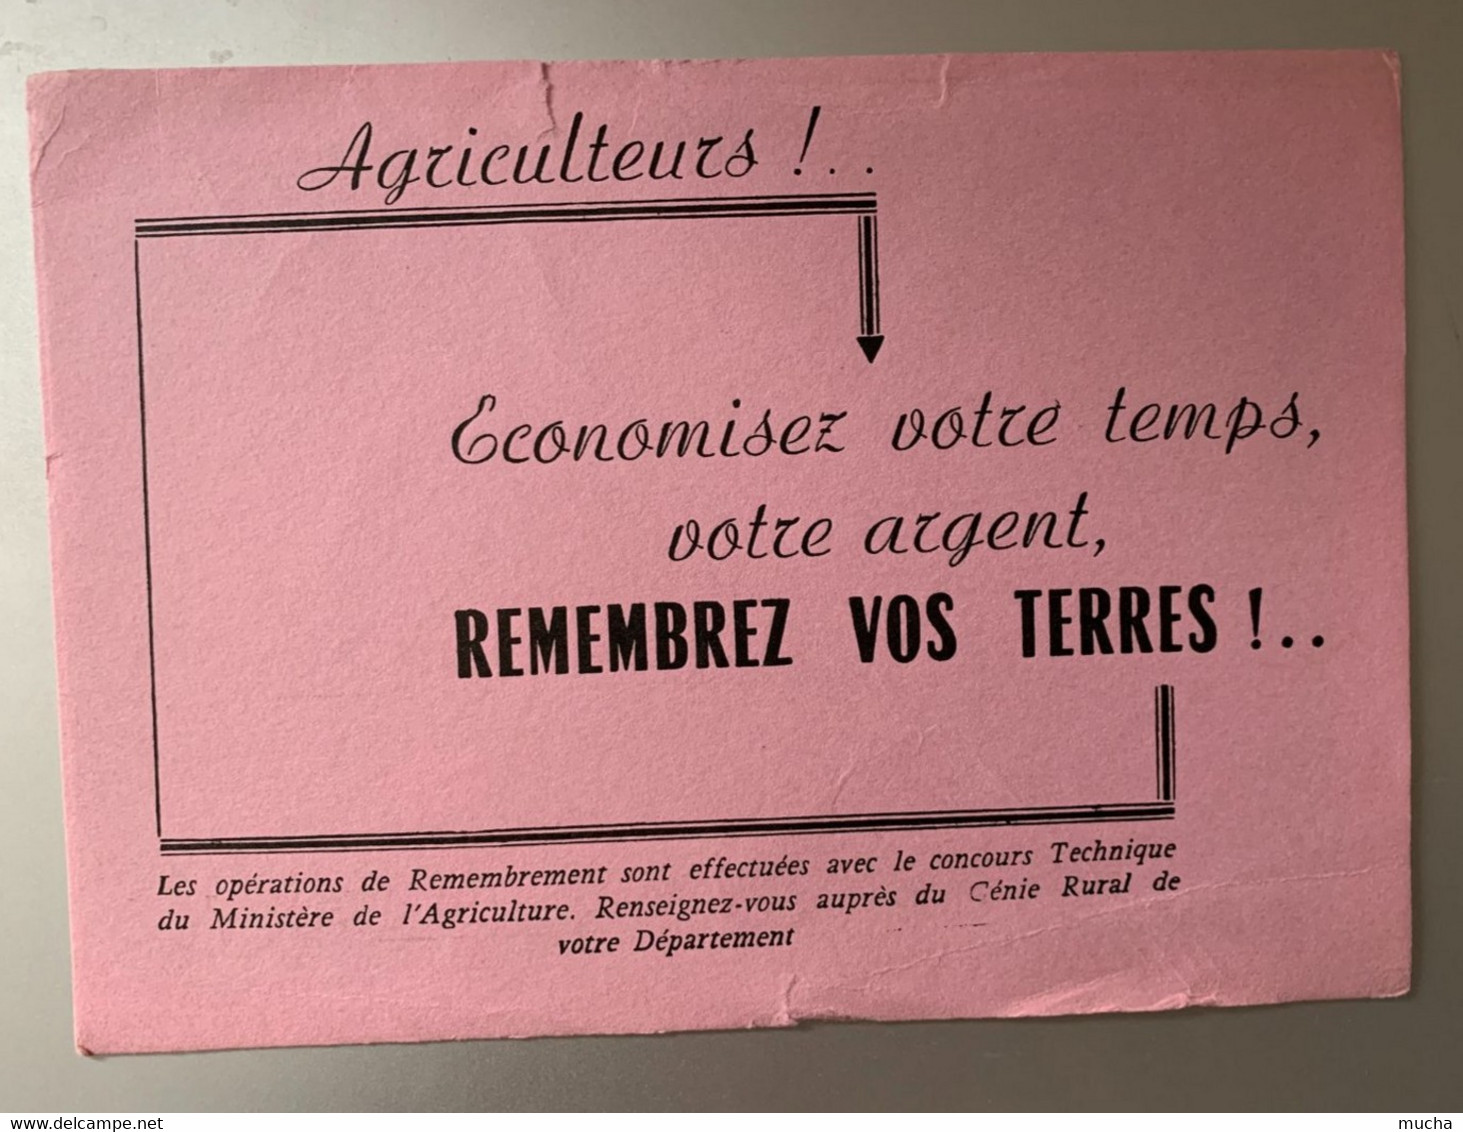 34 - Buvard Agriculteurs Economisez Votre Temps, Votre Argent Remembrez Vos Terres !! - Agriculture